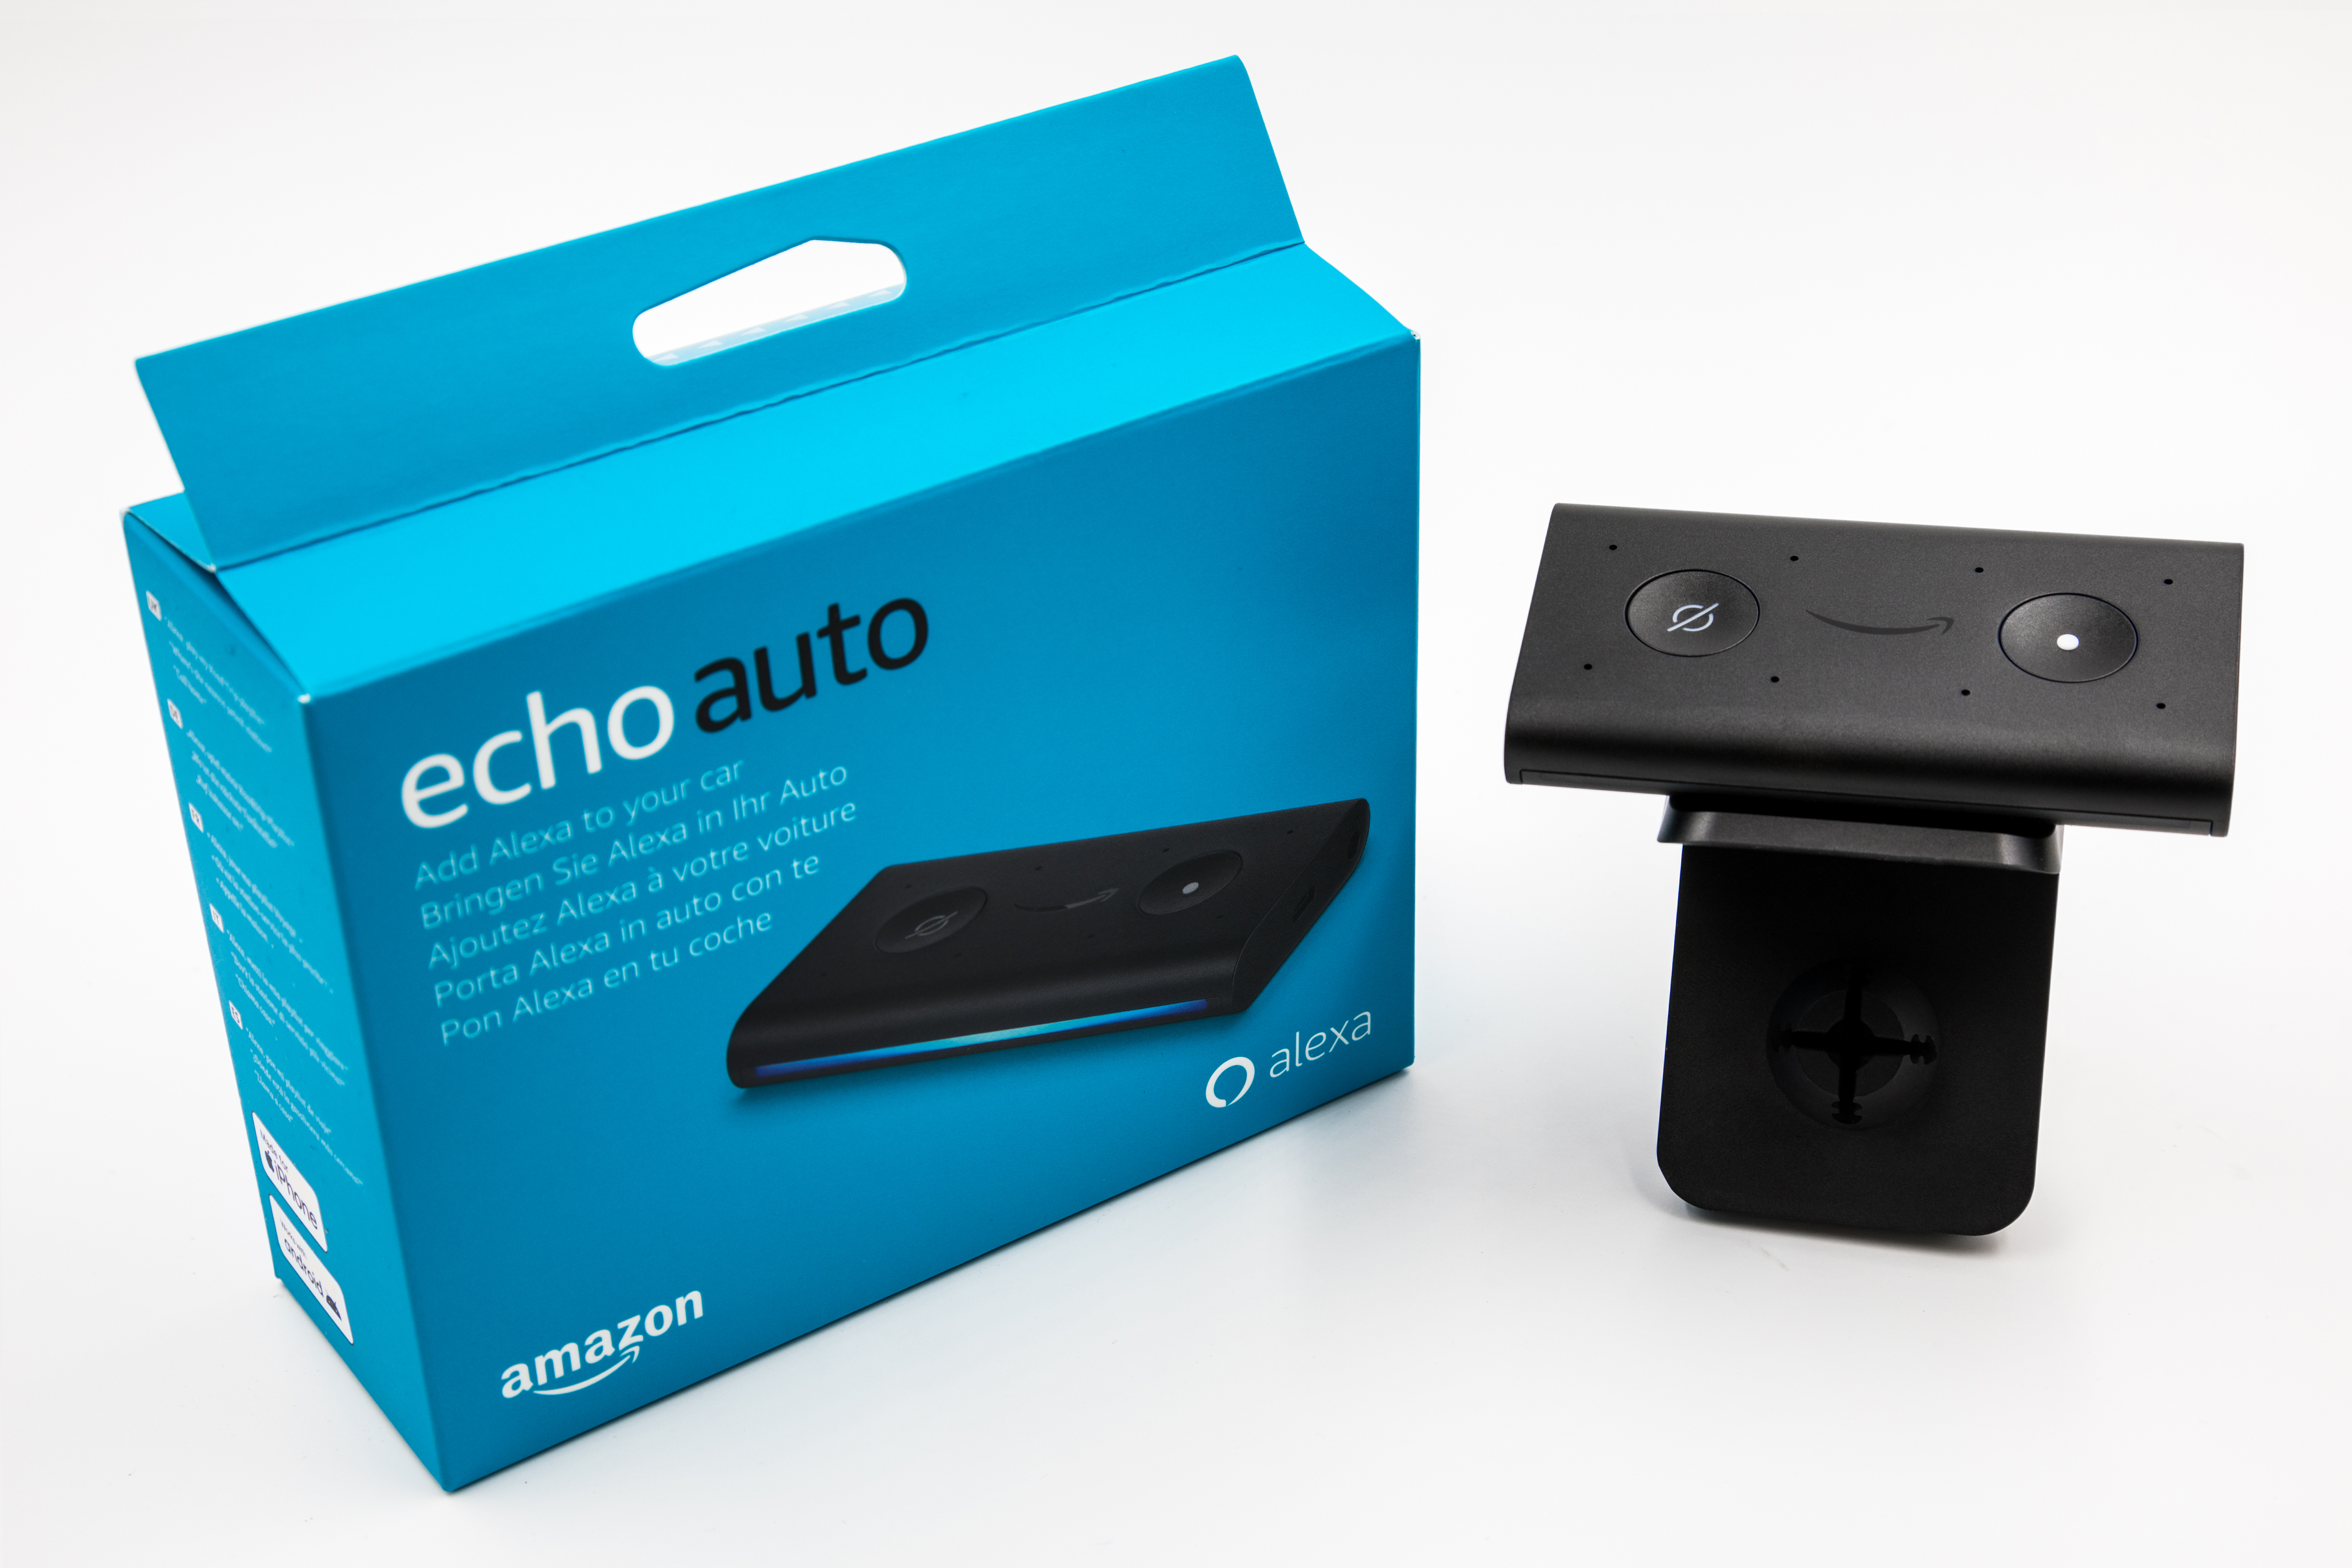 lancia Echo Auto in Italia: solo 59,99€ per avere Alexa